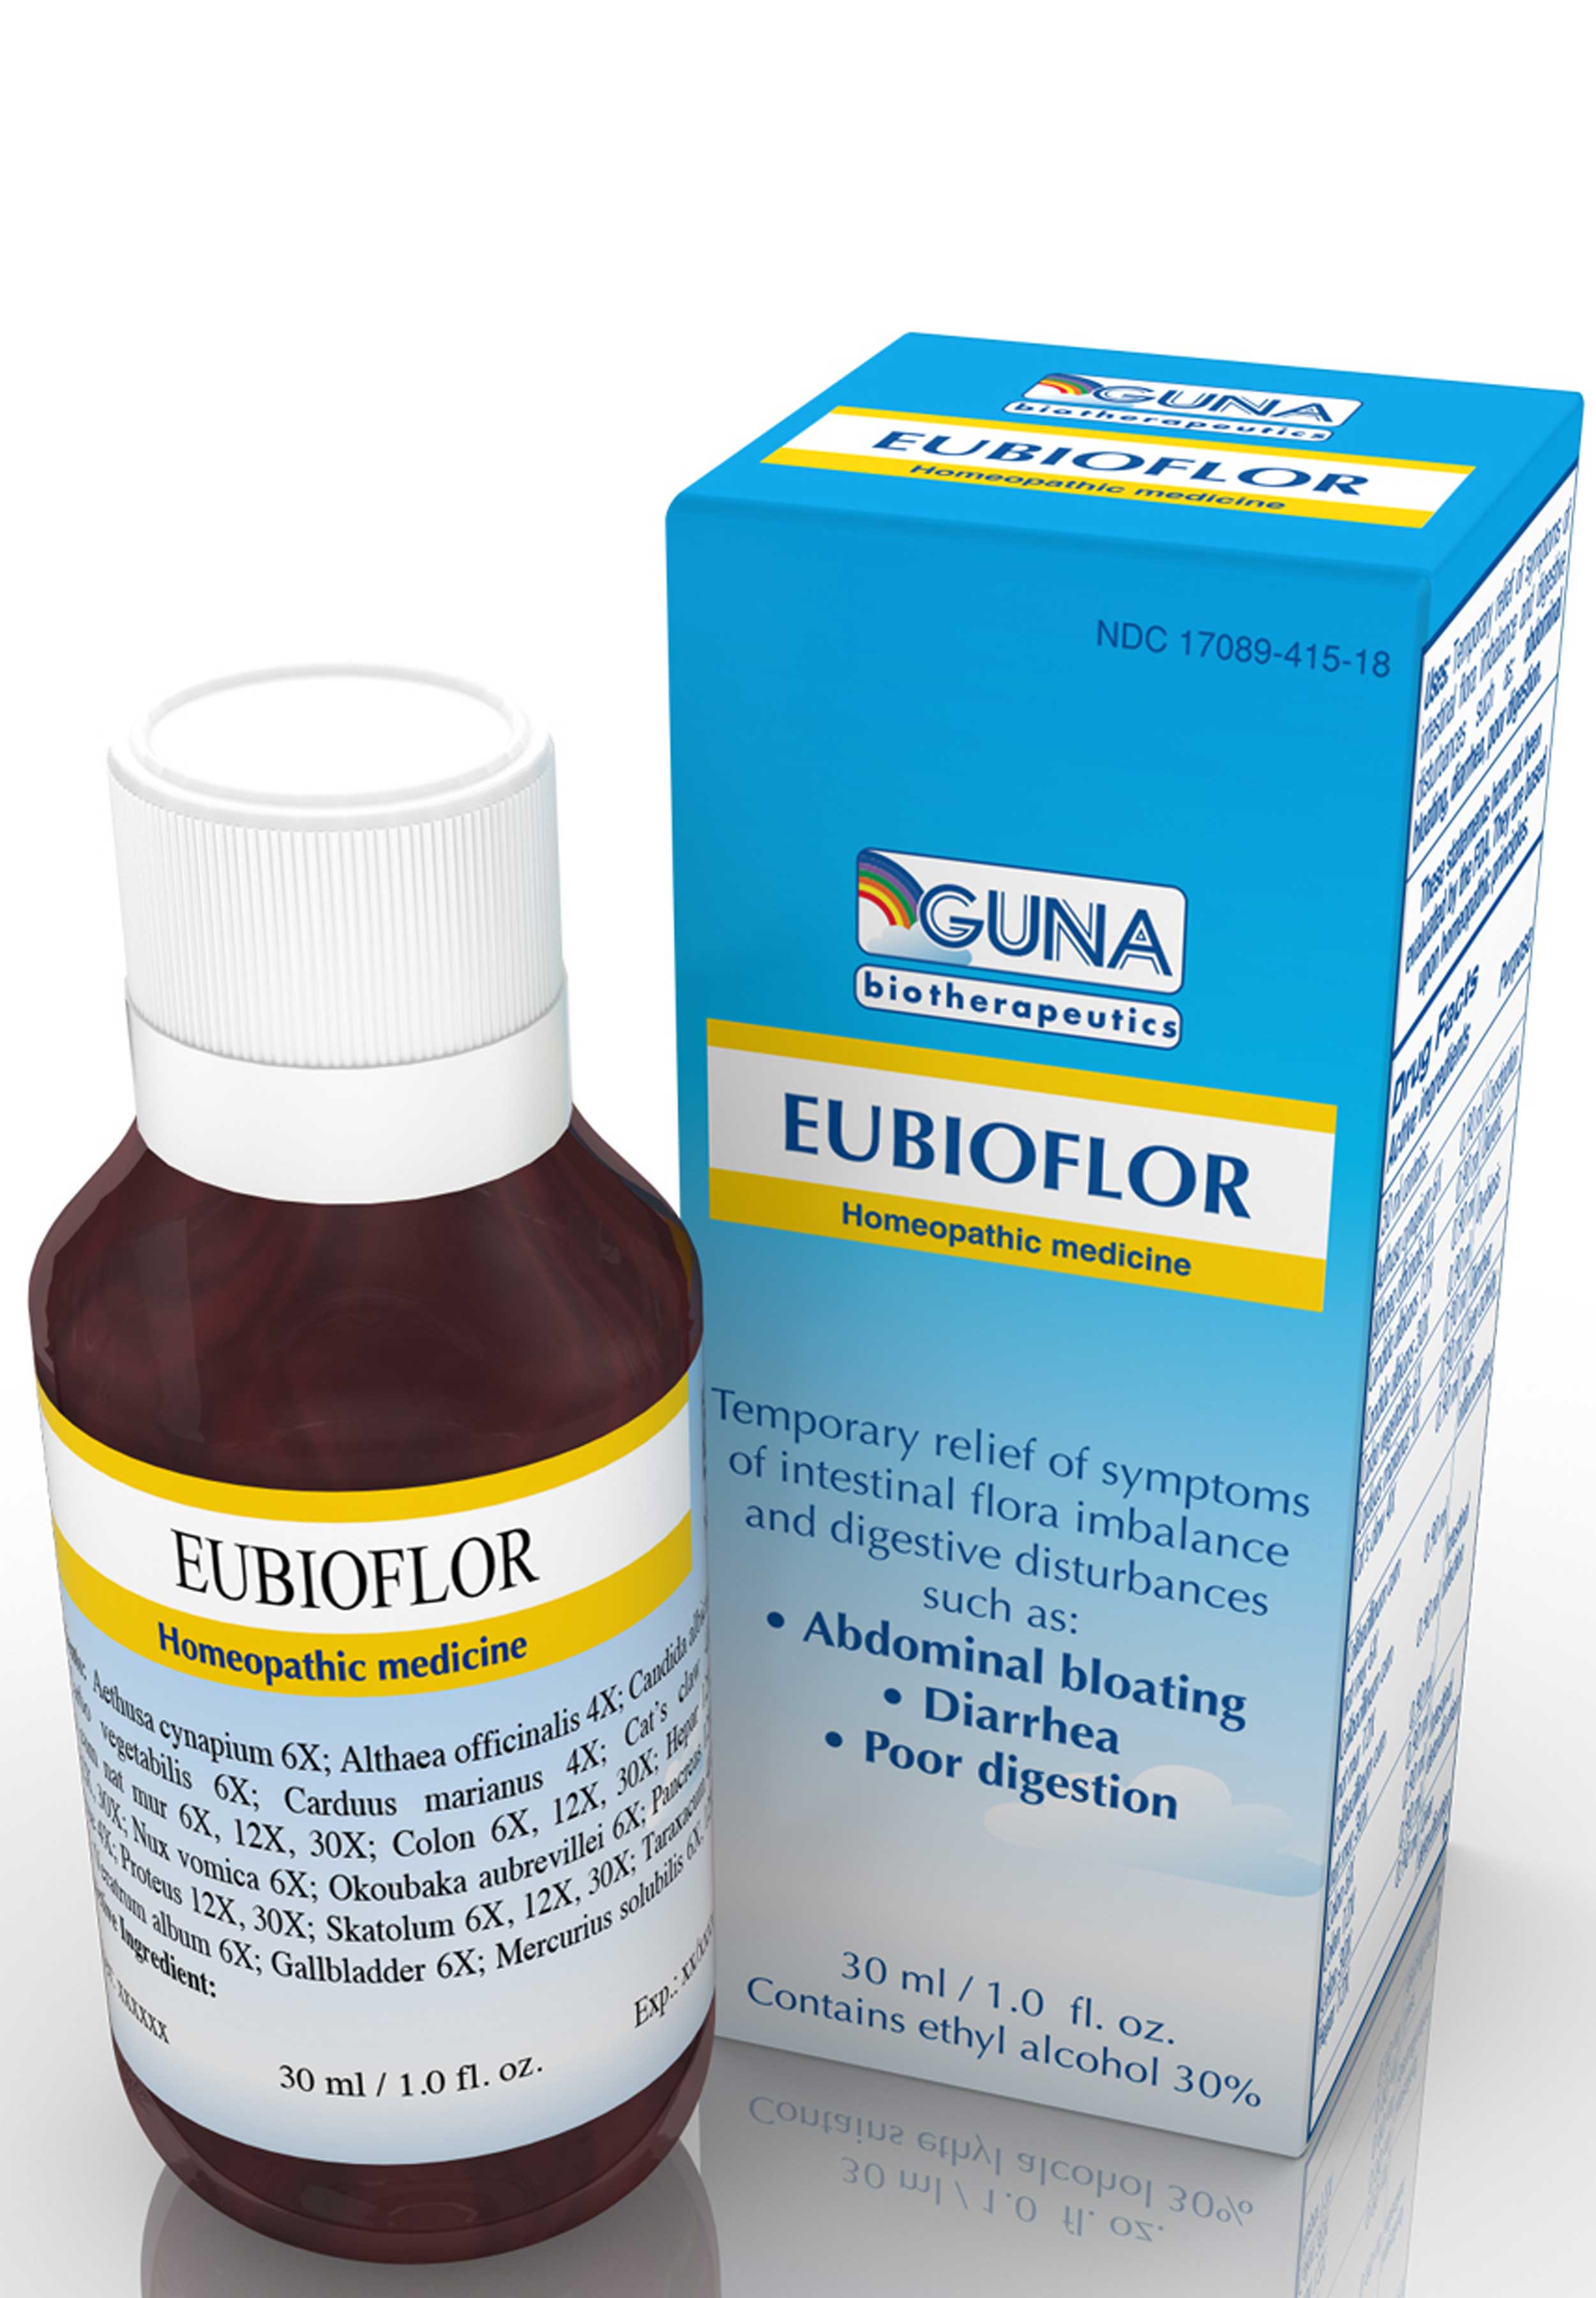 GUNA Biotherapeutics Eubioflor